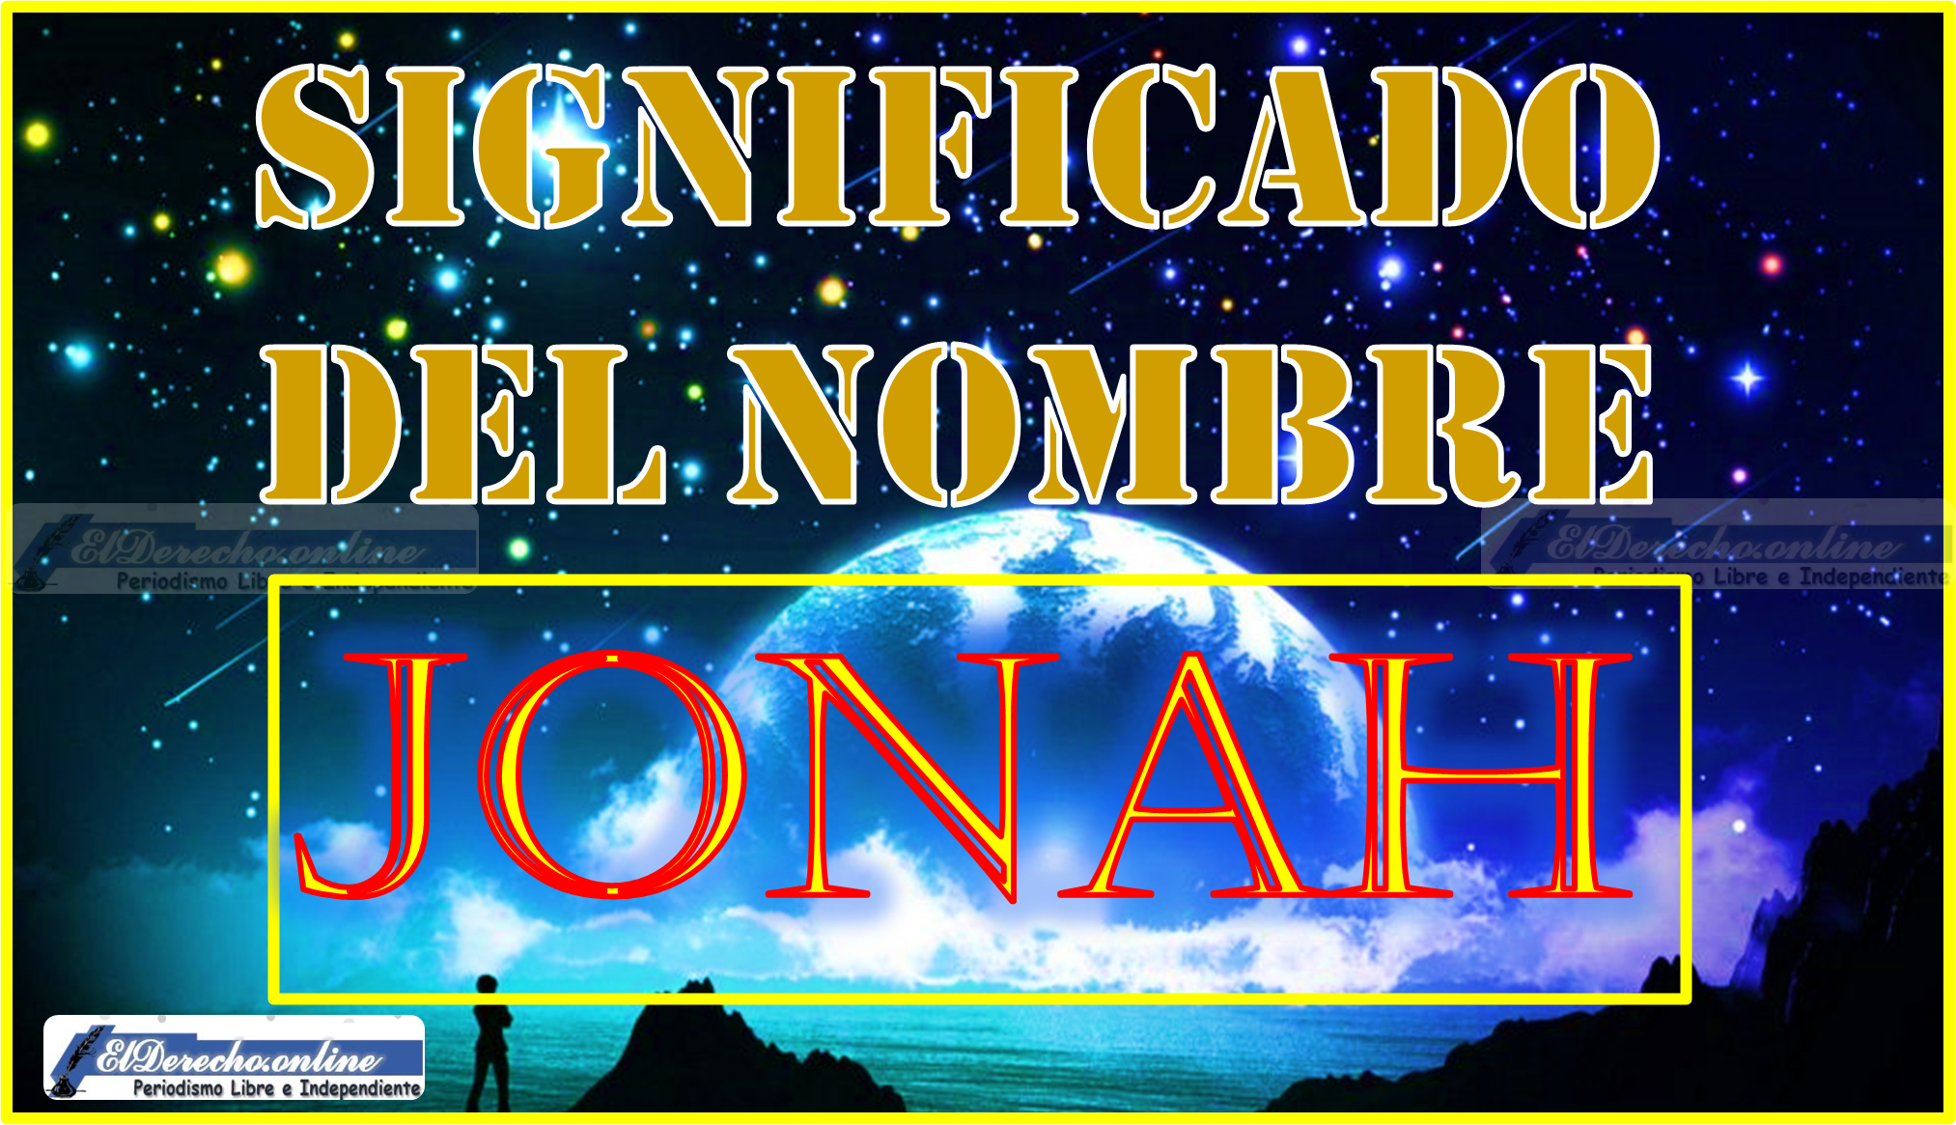 Significado del nombre Jonah, su origen y más